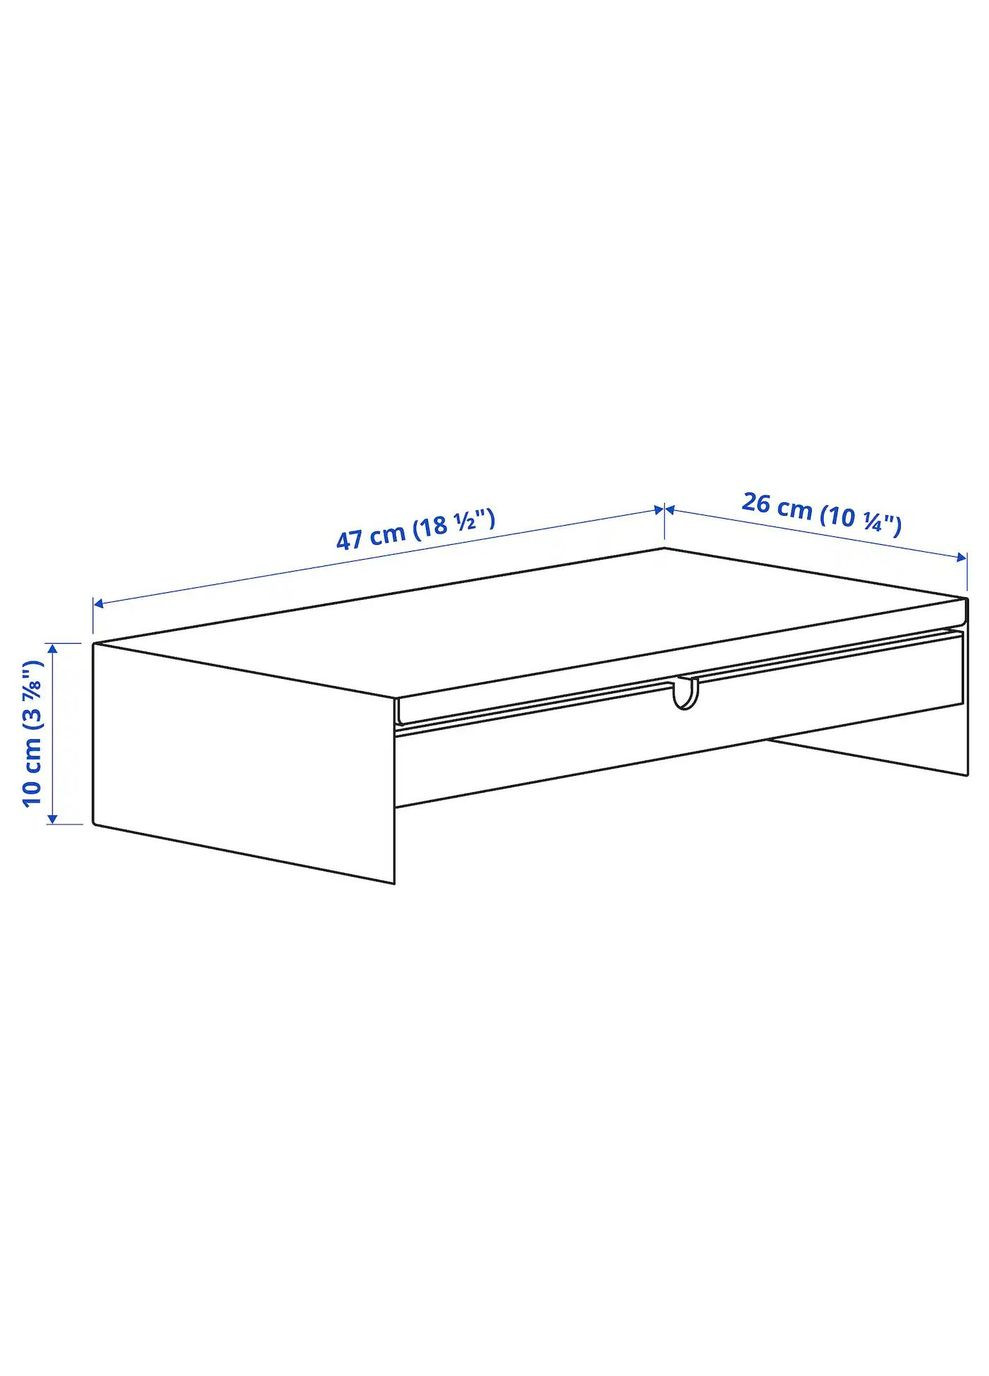 Поєднання стіл/шафа ІКЕА TROTTEN/LIDKULLEN / BESTA/LAPPVIKEN (s89436598) IKEA (278408607)